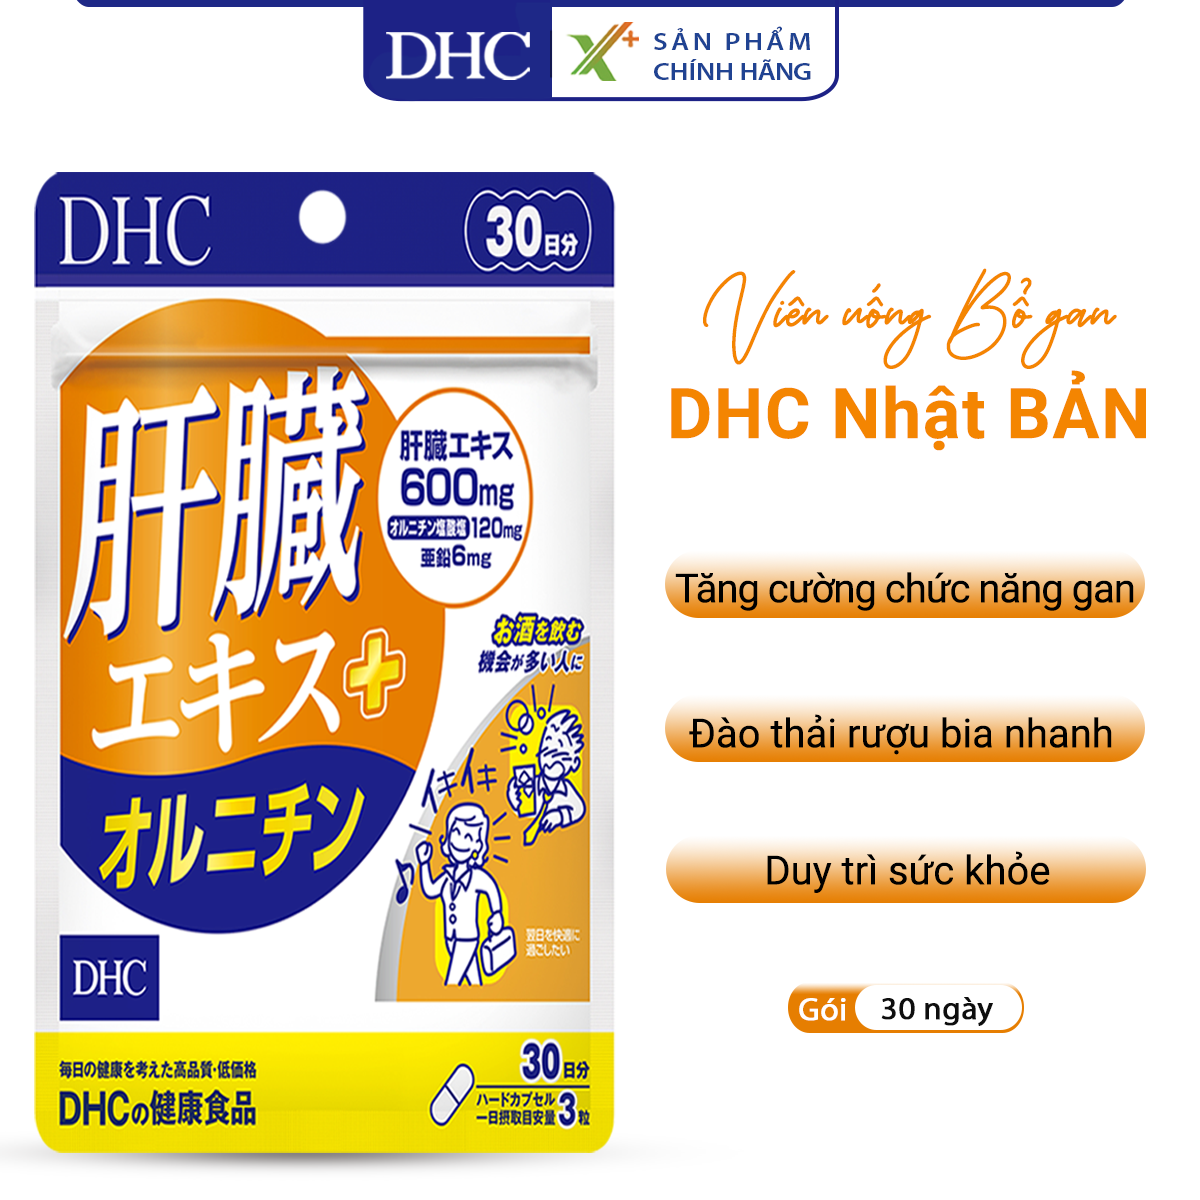 Viên uống bổ gan DHC Nhật Bản thực phẩm chức năng giải độc gan gói 30 ngày